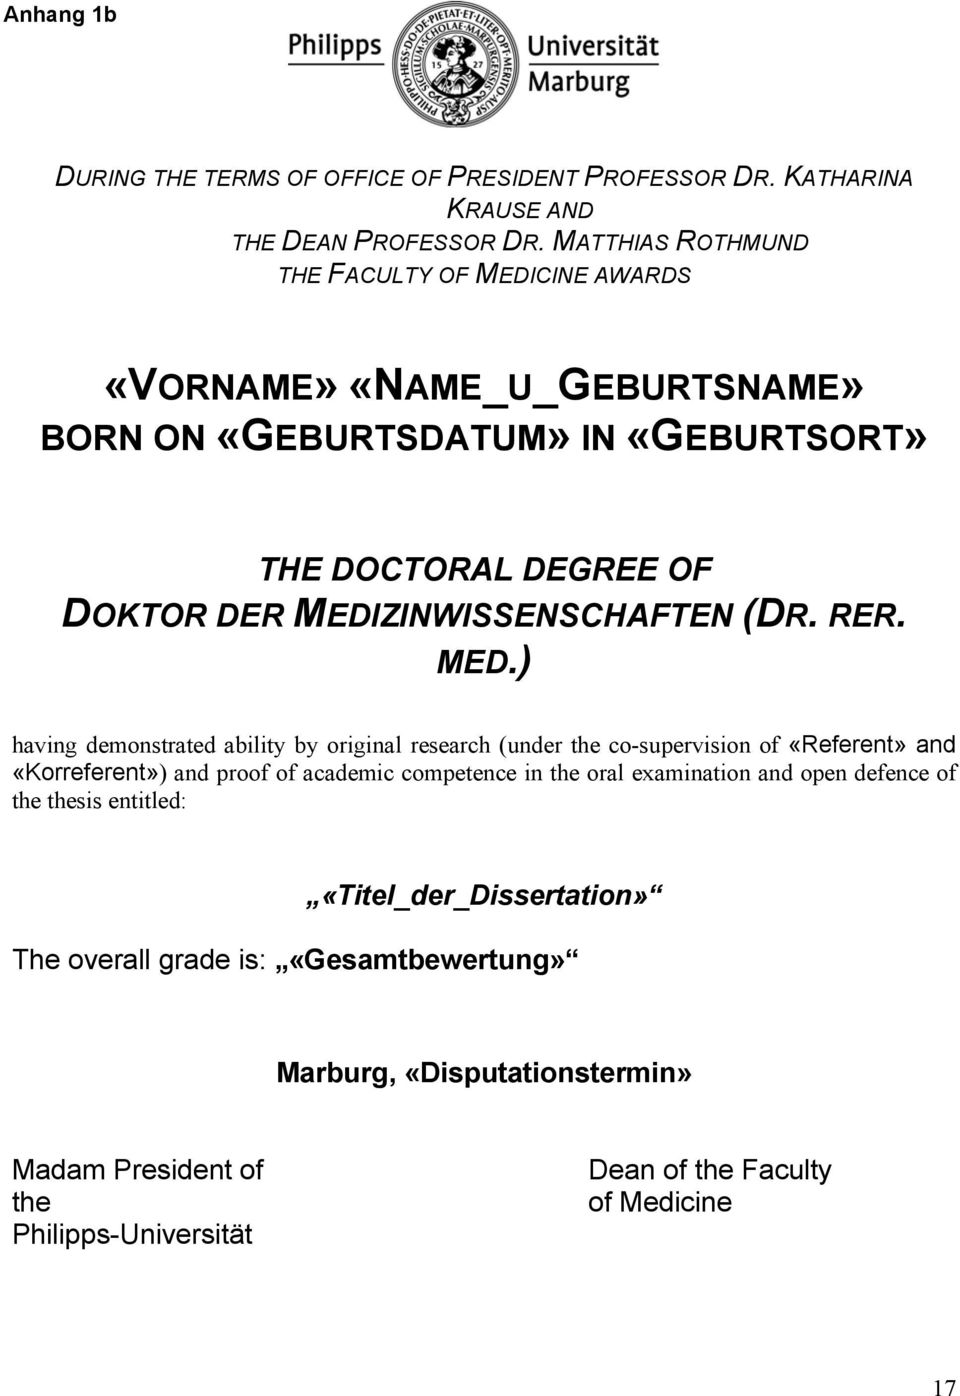 MEDIZINWISSENSCHAFTEN (DR. RER. MED.